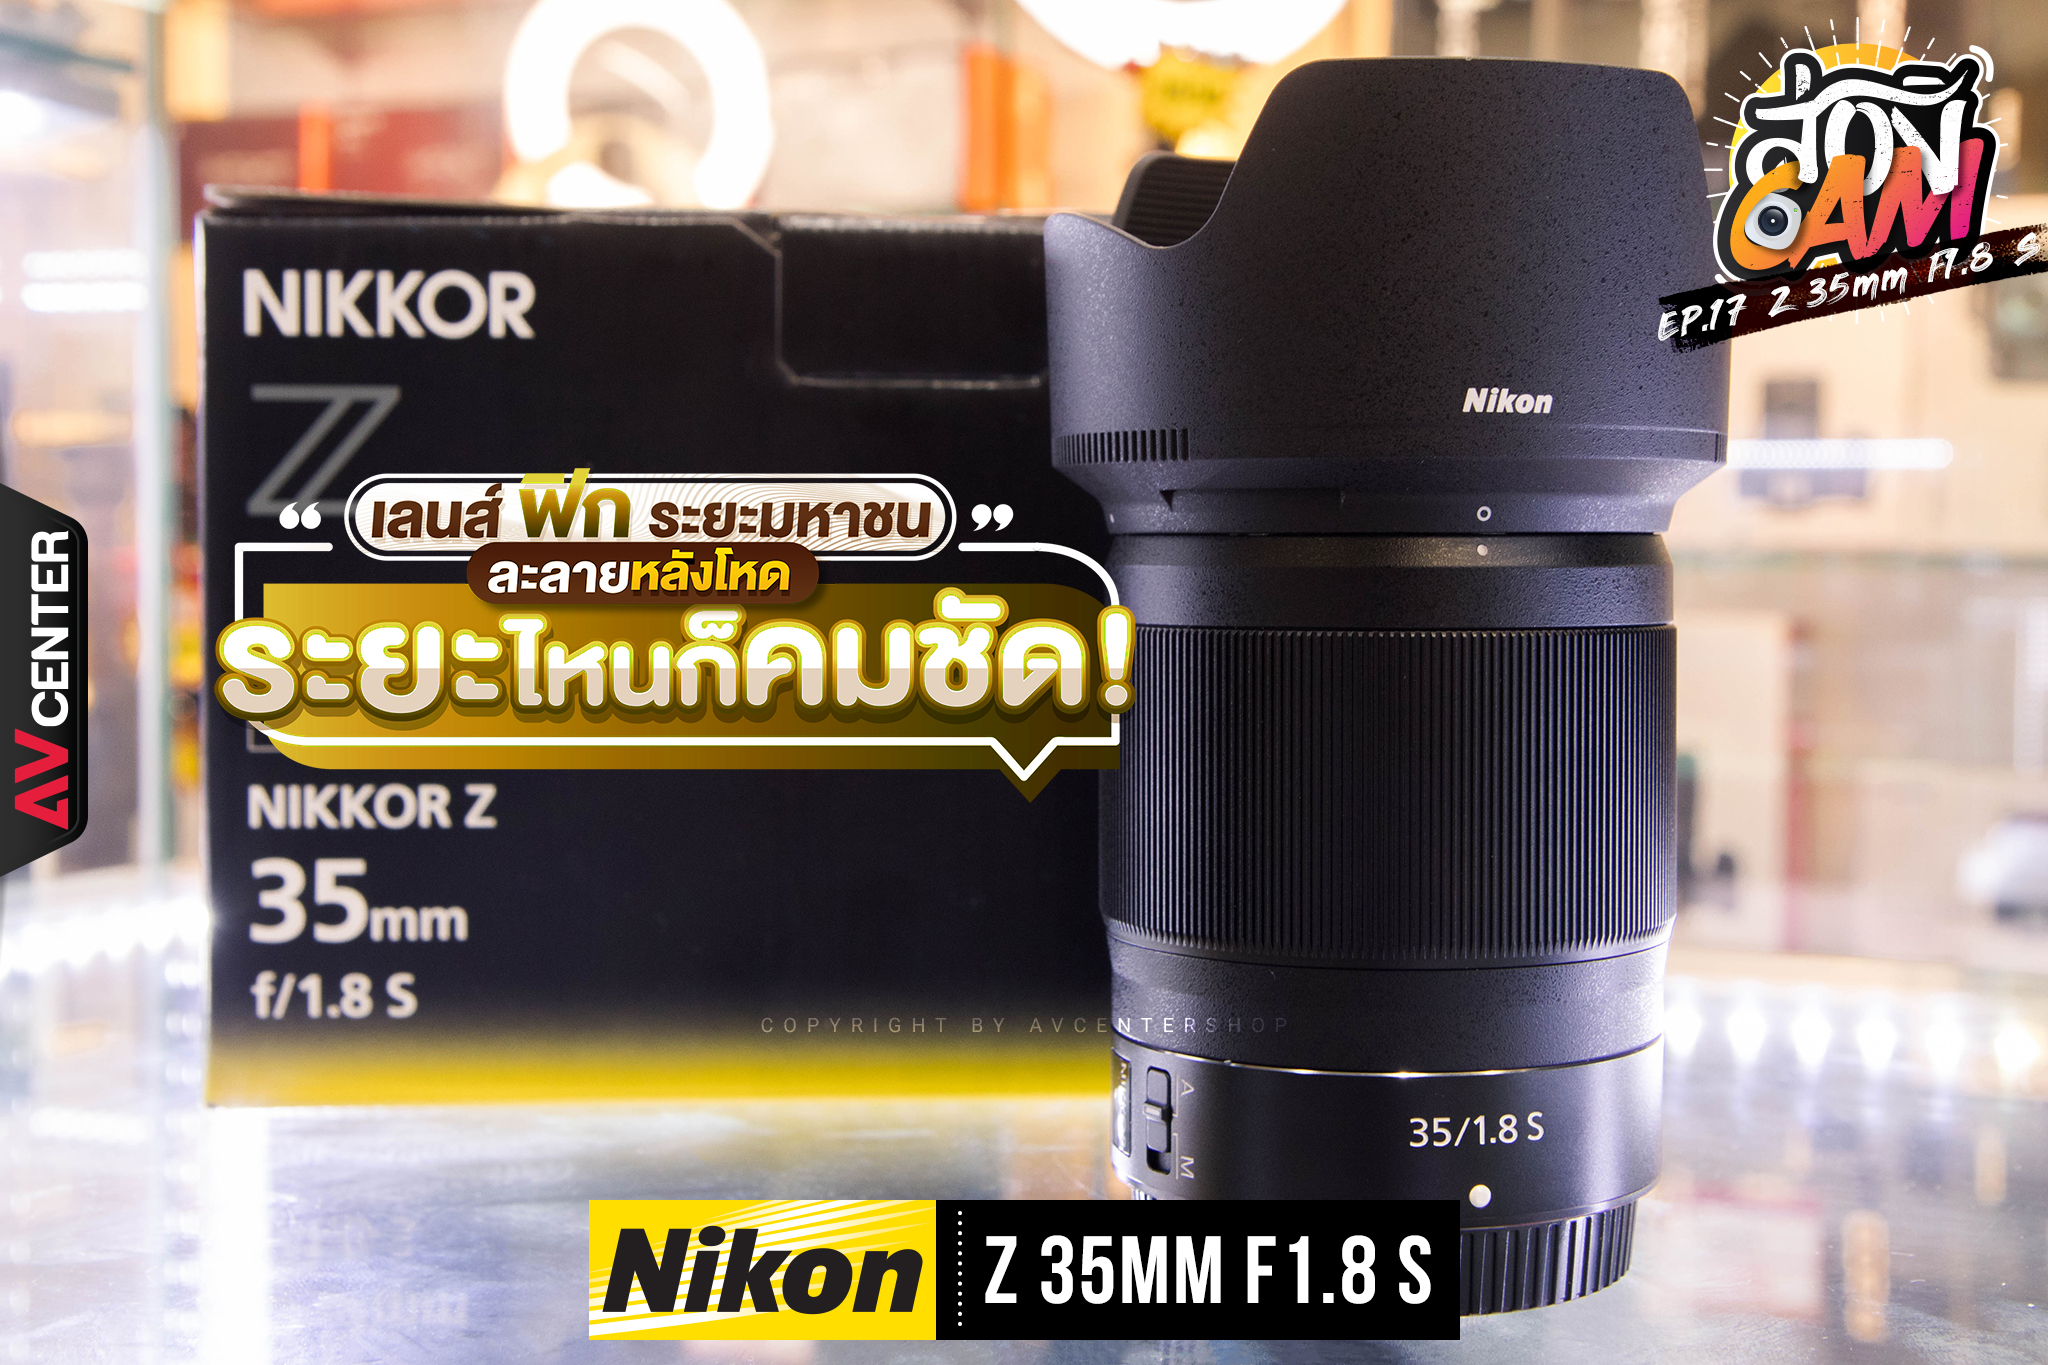 ส่อง Cam : EP.17 "Nikon NIKKOR Z 35mm F1.8 S" เลนส์ฟิกระยะมหาชน ละลายหลังโหด ระยะไหนก็คมชัด